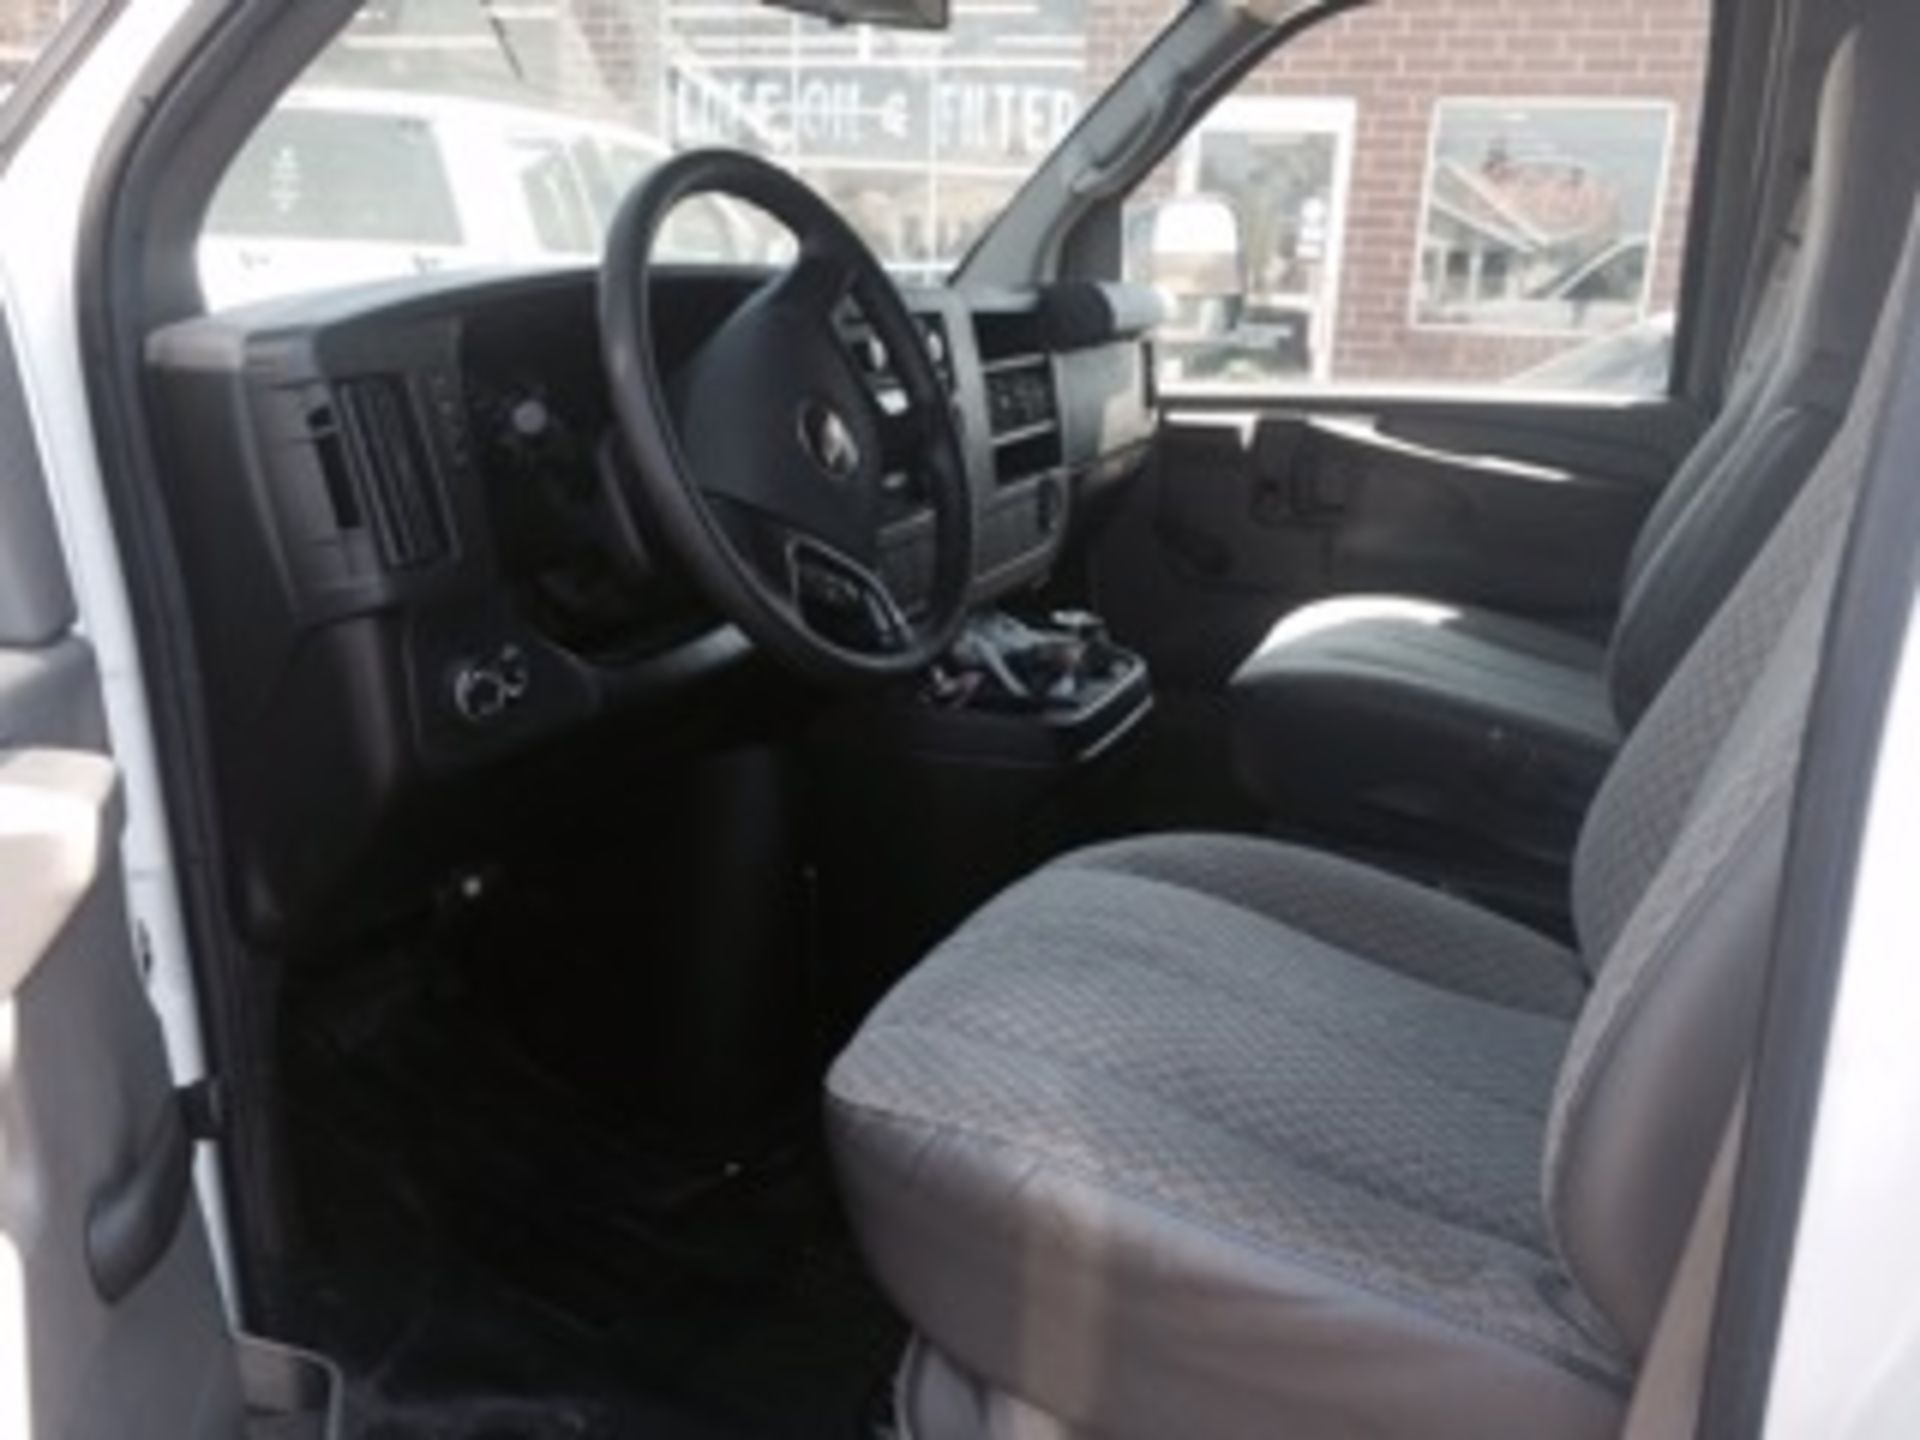 2009 Chevrolet Express panel van, VIN 1GCFG15X1166171. - Image 5 of 6